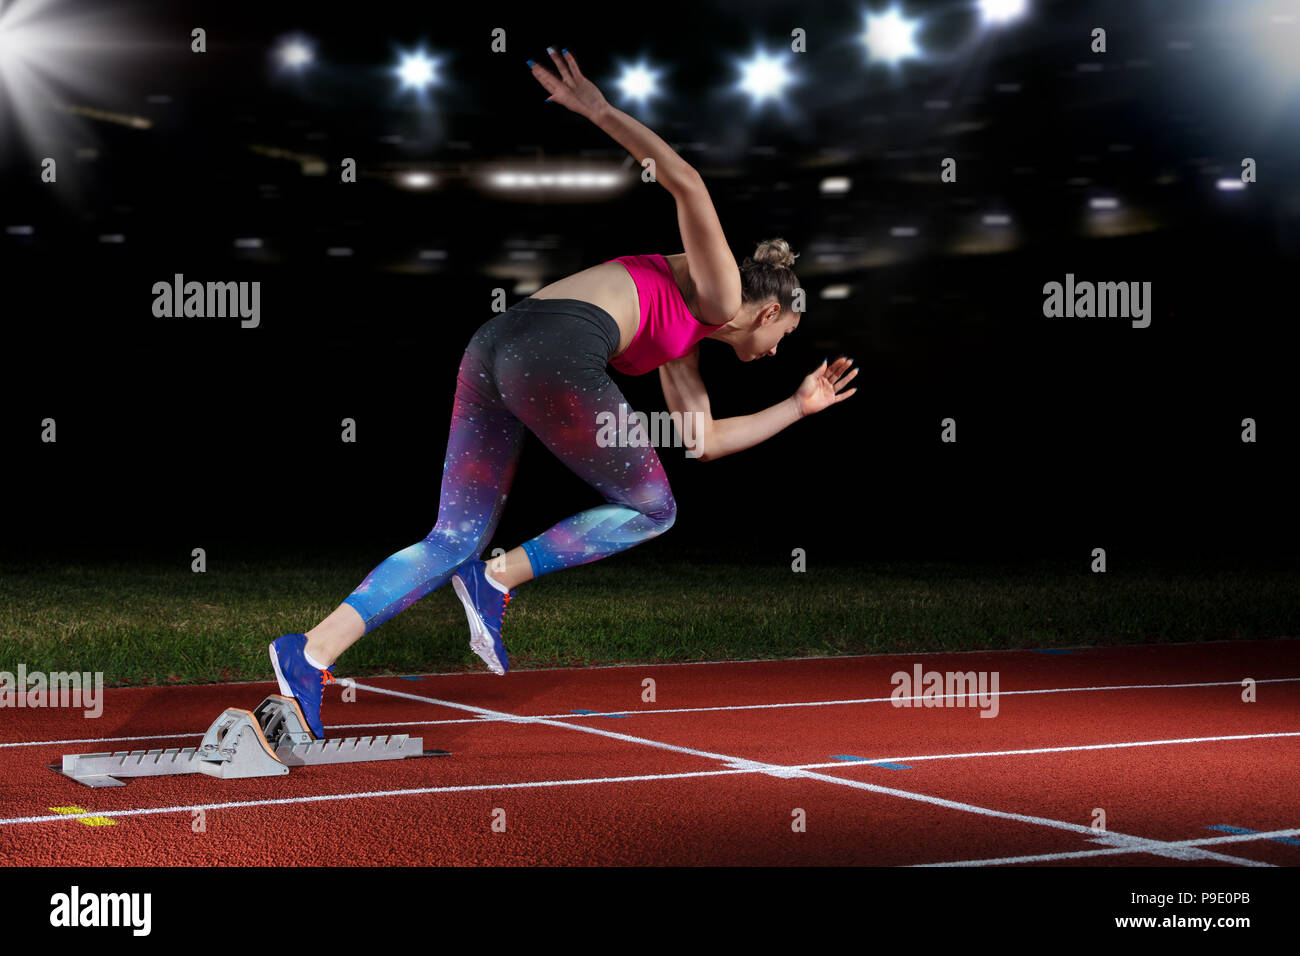 Frau Sprinter verlassen Start auf der Leichtathletikbahn. explodierende Start am Stadion mit Reflektoren Stockfoto